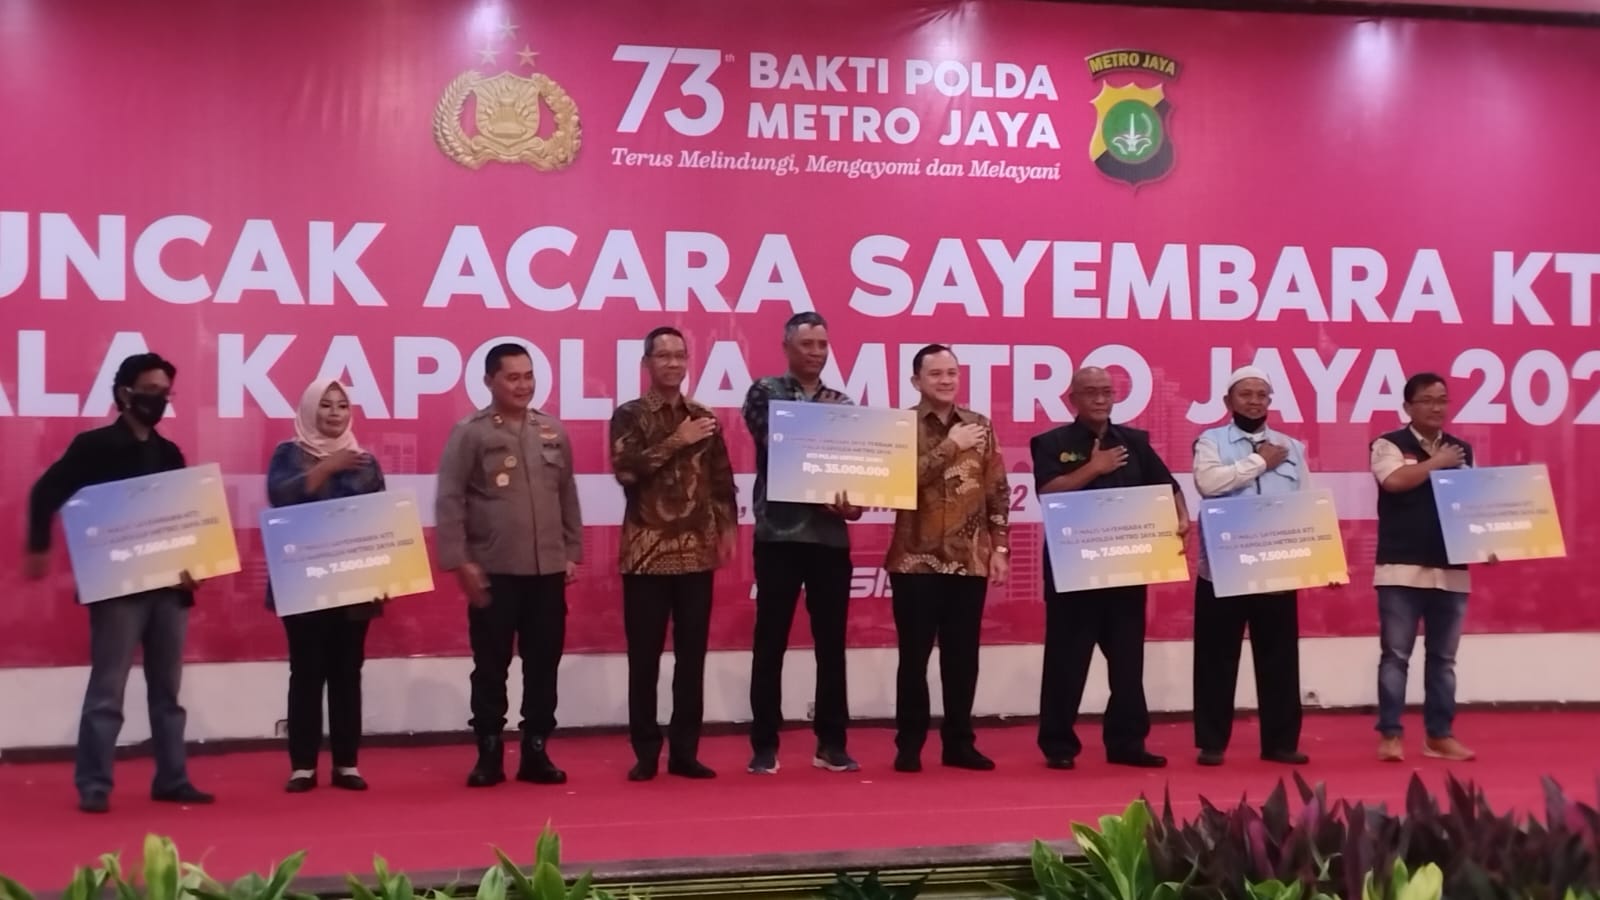 HUT Polda Metro Jaya ke-73 Dimeriahkan Kampung Tangguh Jaya, Bangkitkan Karakteristik Bangsa yang Gotong Royong, Guyub dan Rukun